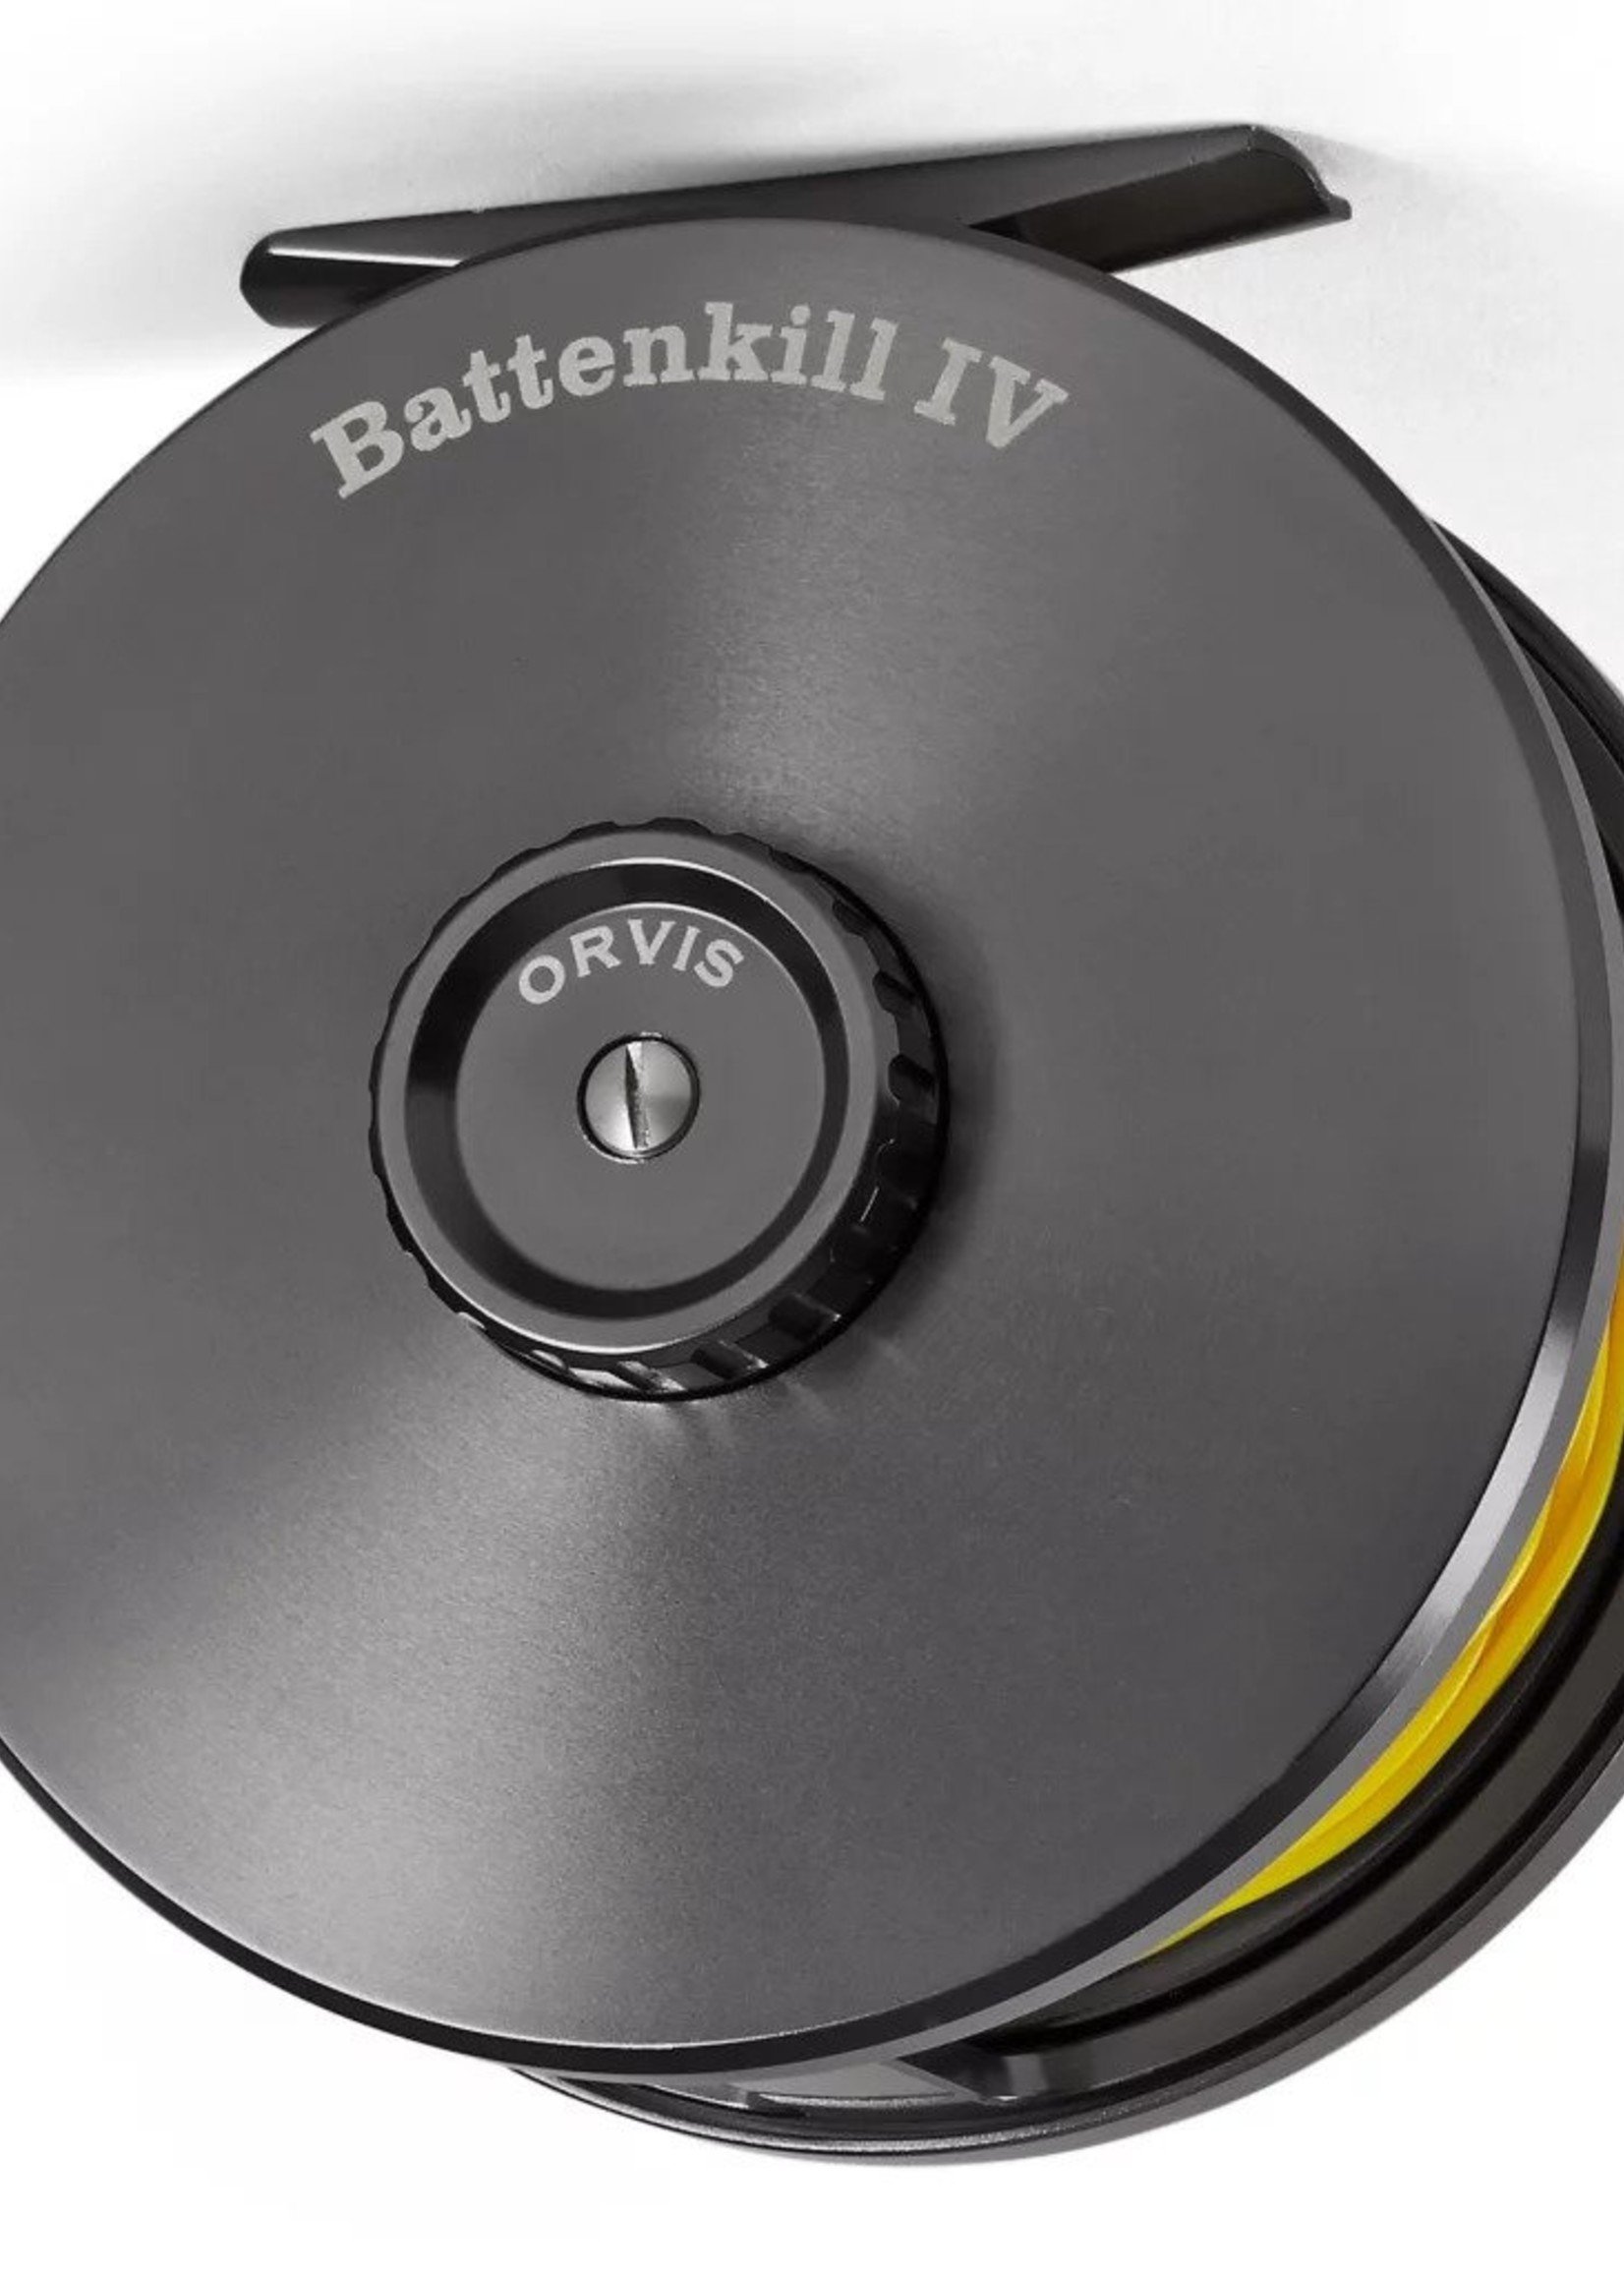 Expert Review: Orvis Battenkill Disc Reel